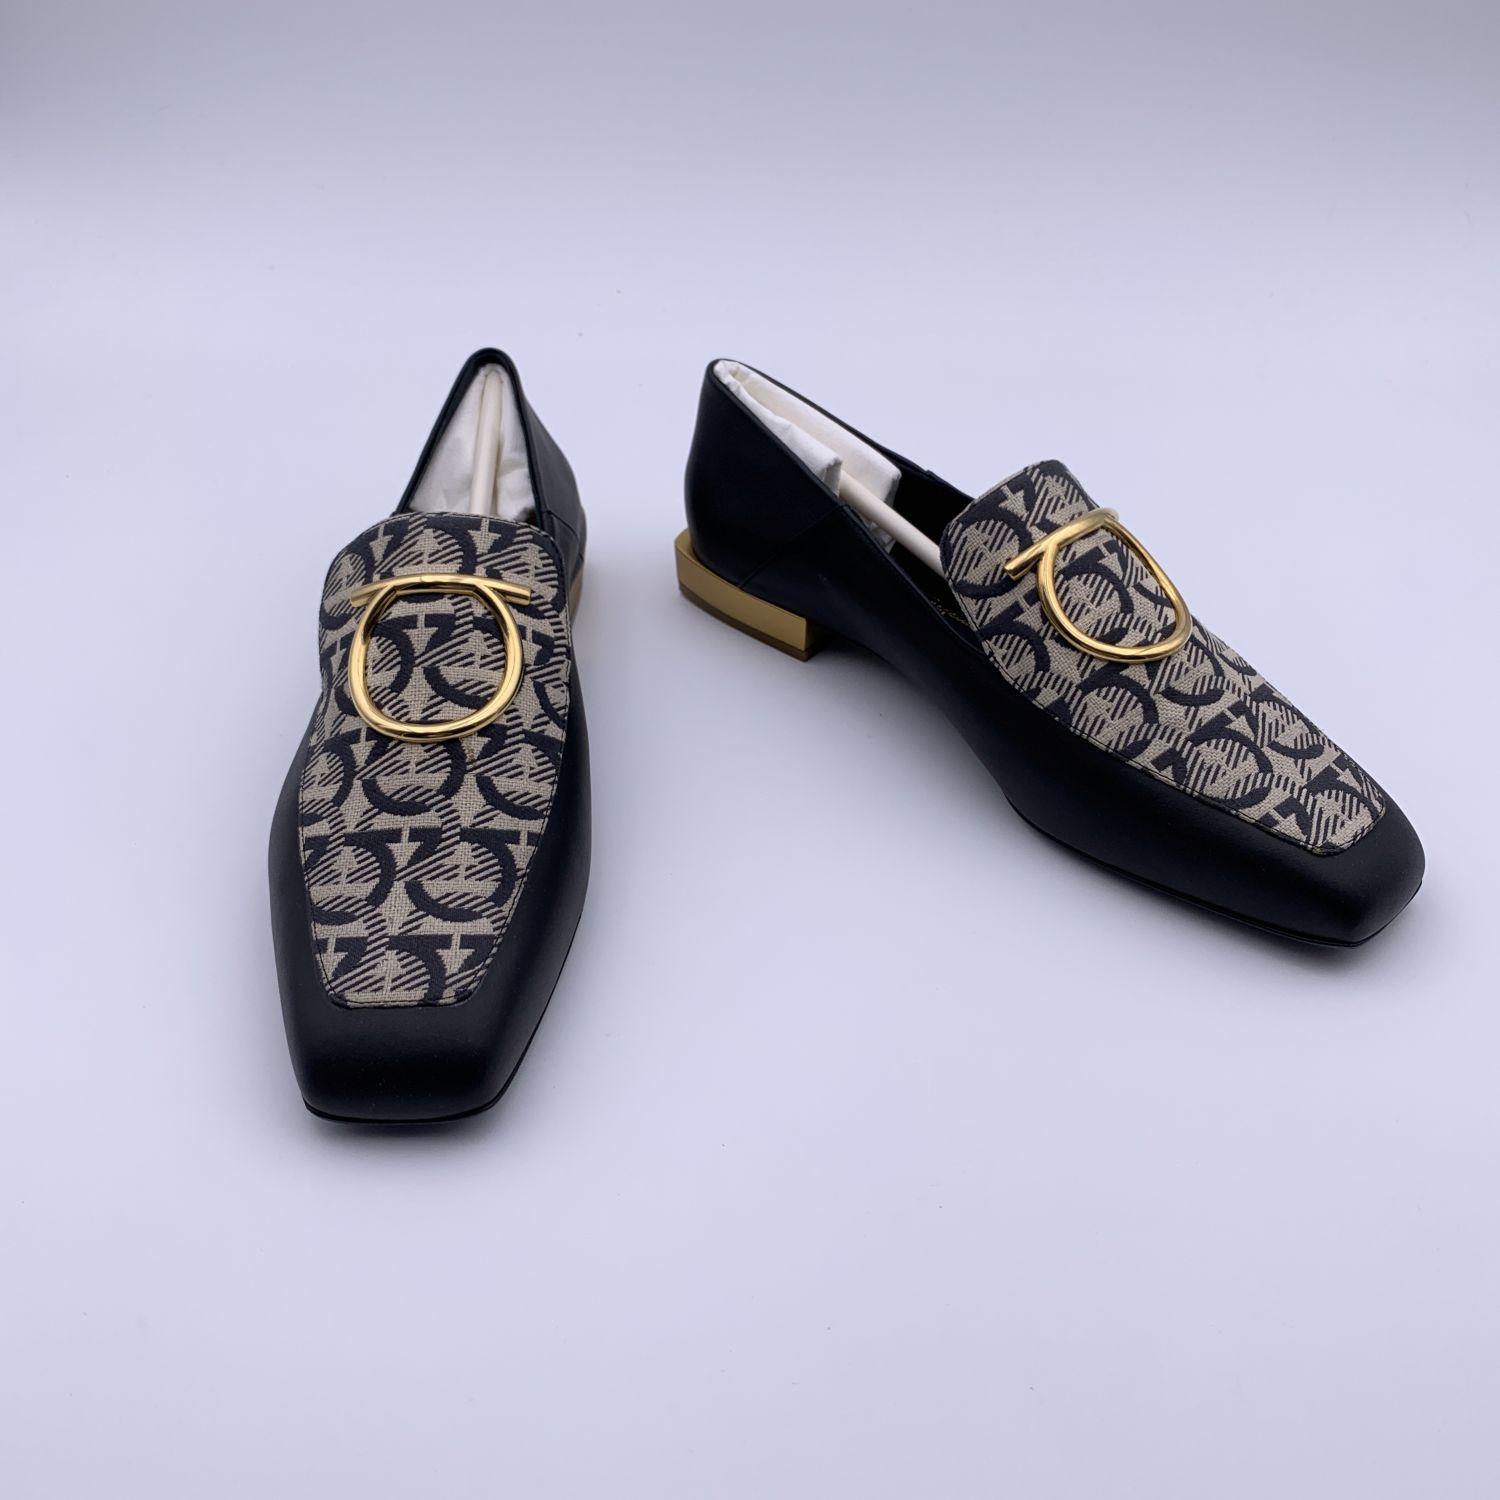 Salvatore Ferragamo Leather Gancini Lana T1 Loafers Size 8.5C 39C In New Condition In Rome, Rome